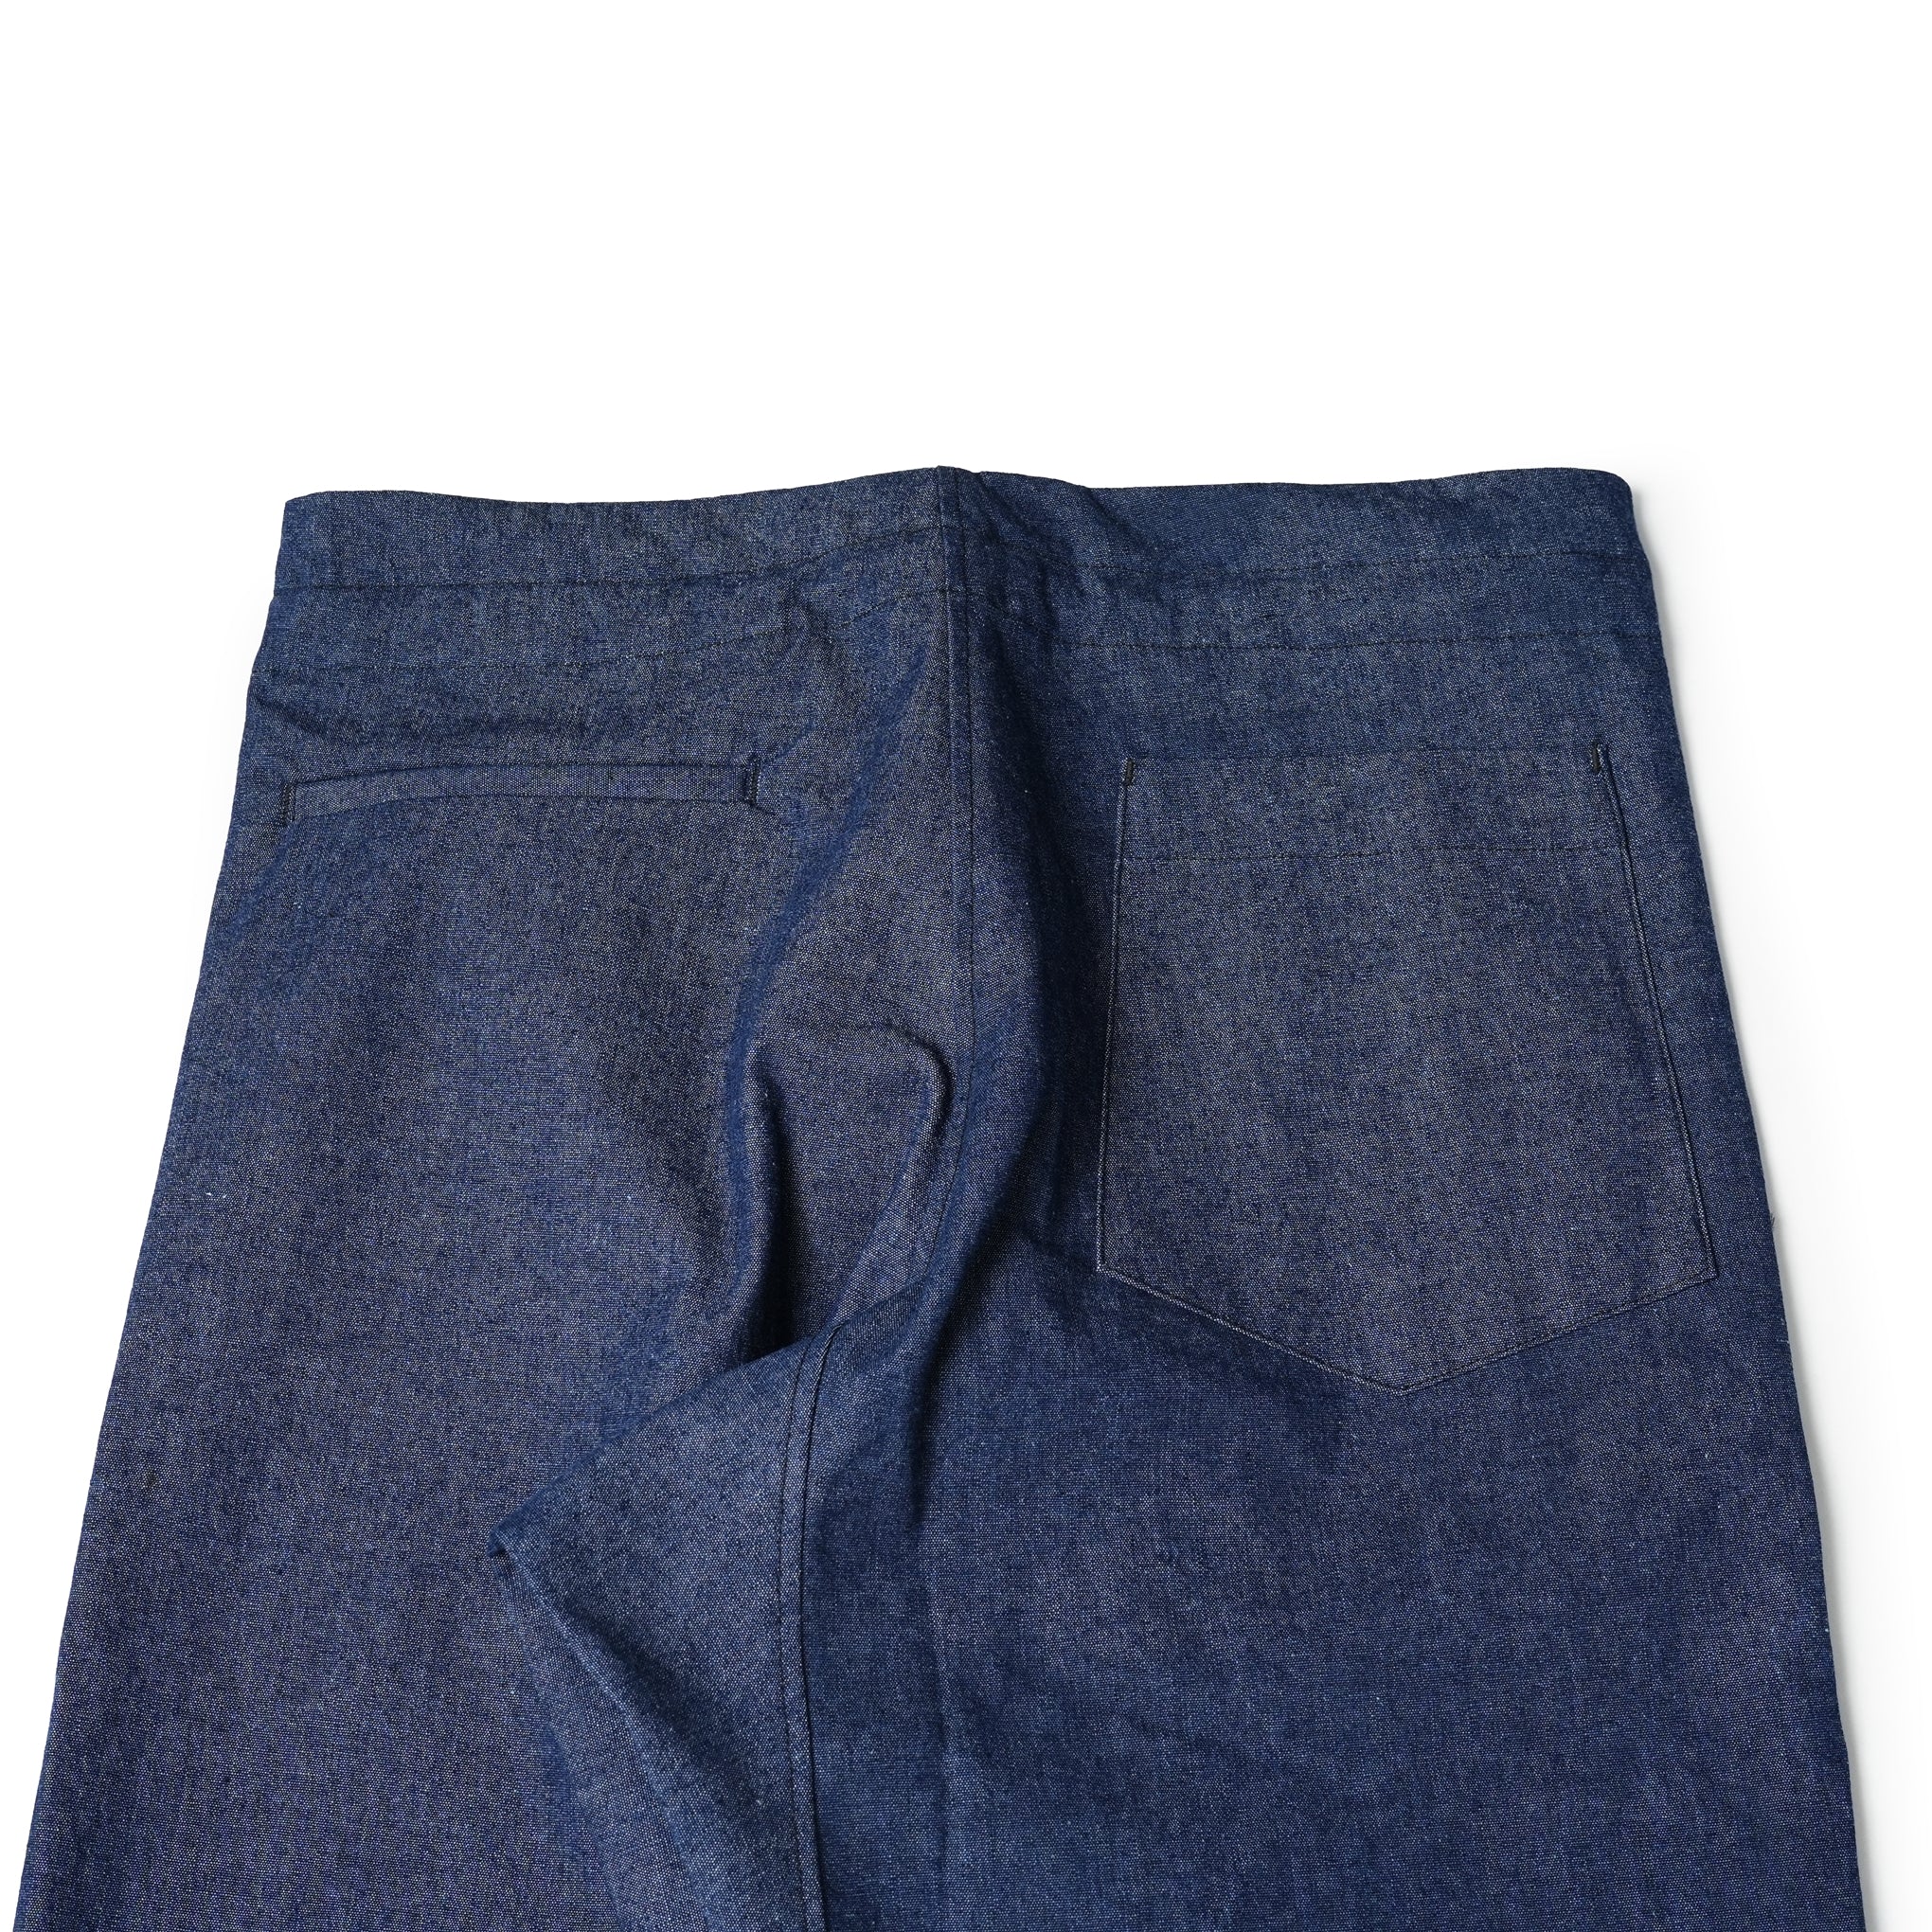 No:M31305-24 | Name:Drop Crotch Pants | Color:Chambray【MONITALY_モニタリー】